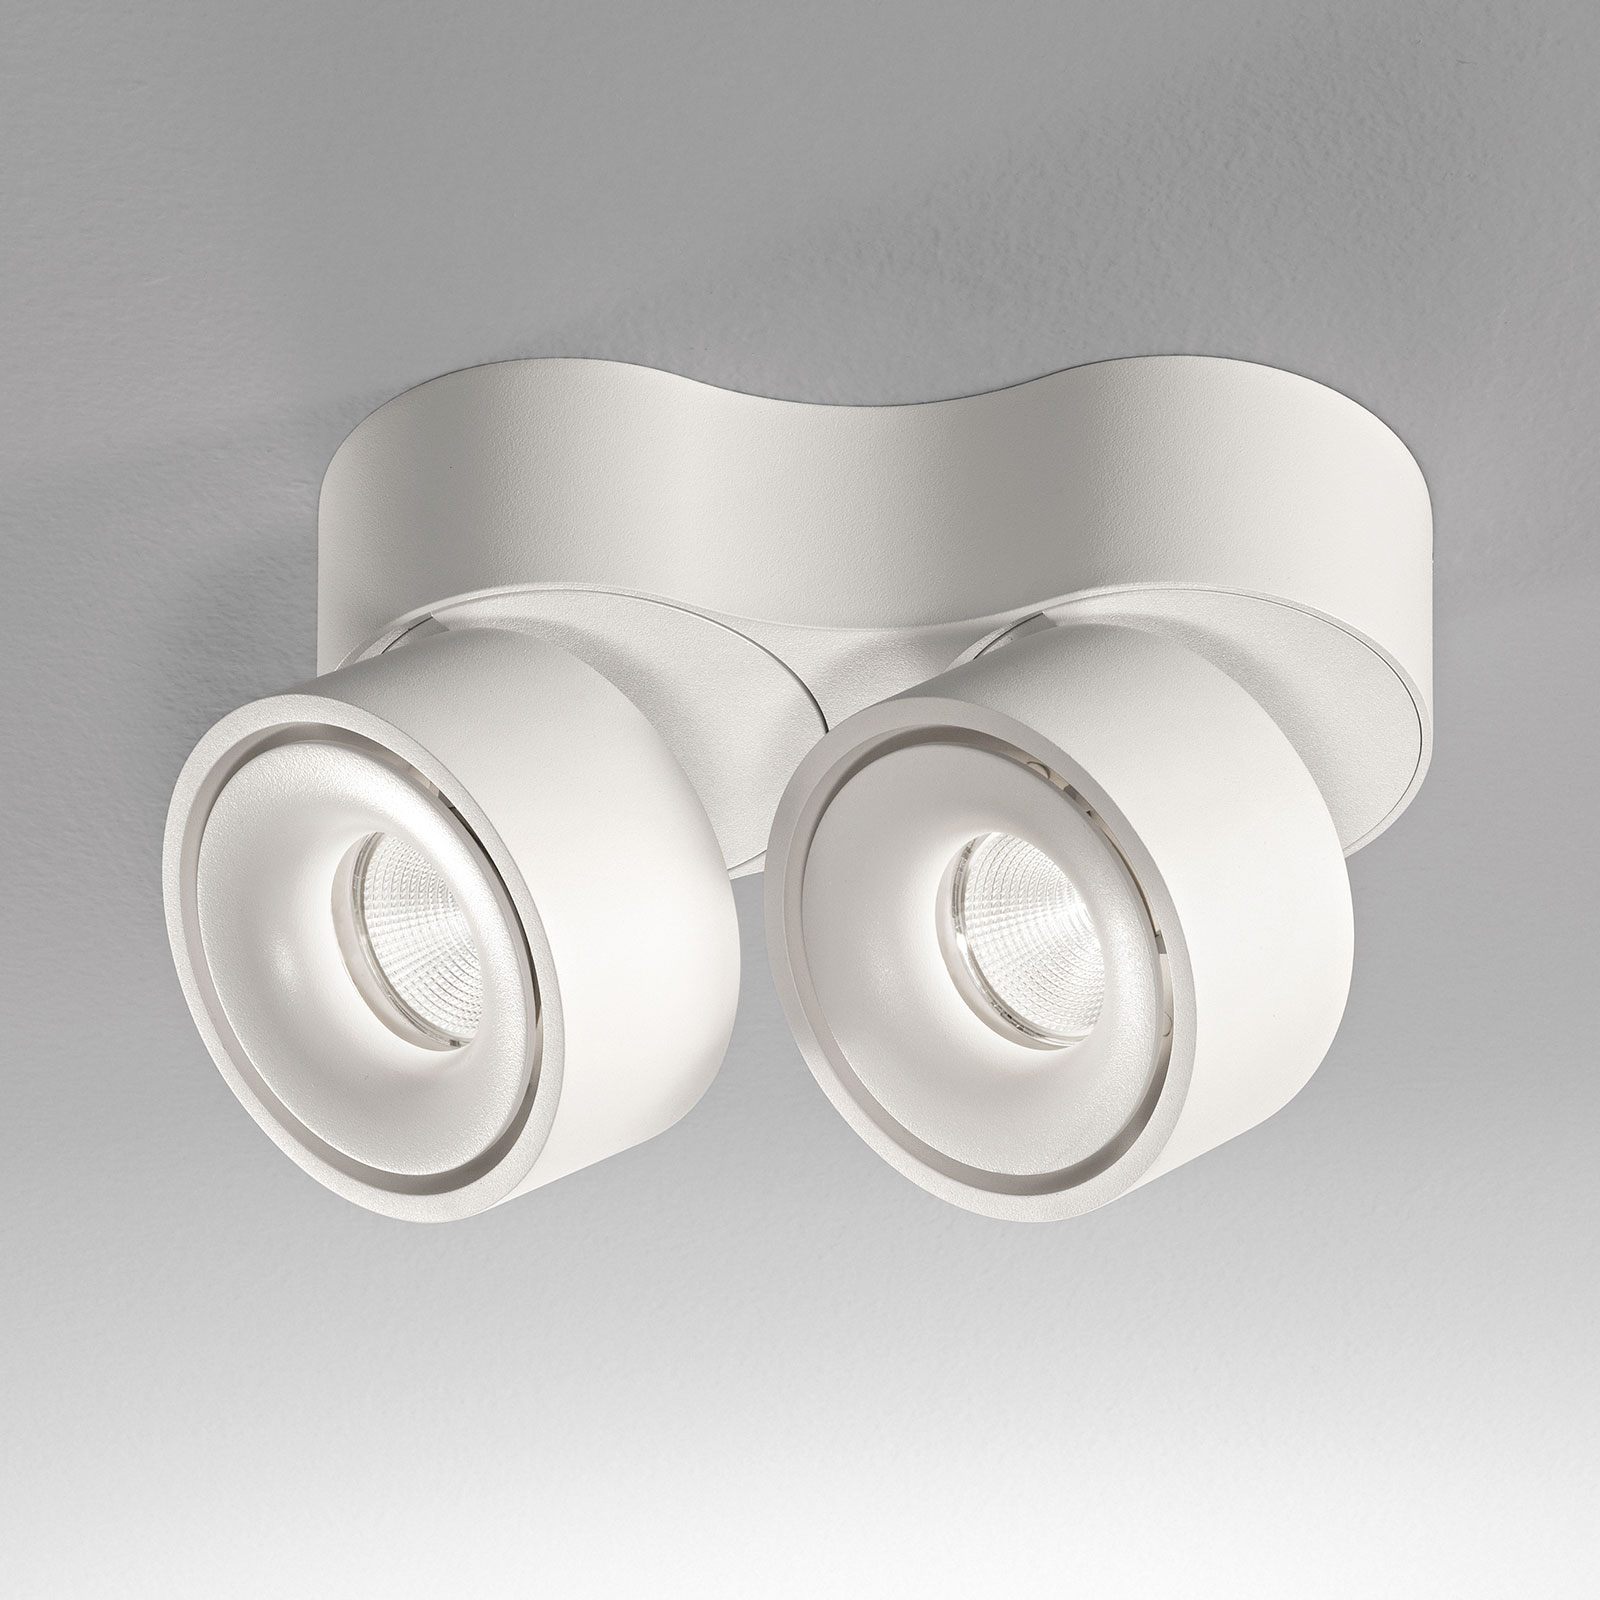 Egger Clippo Duo spot plafond LED, blanc, 3 000 K